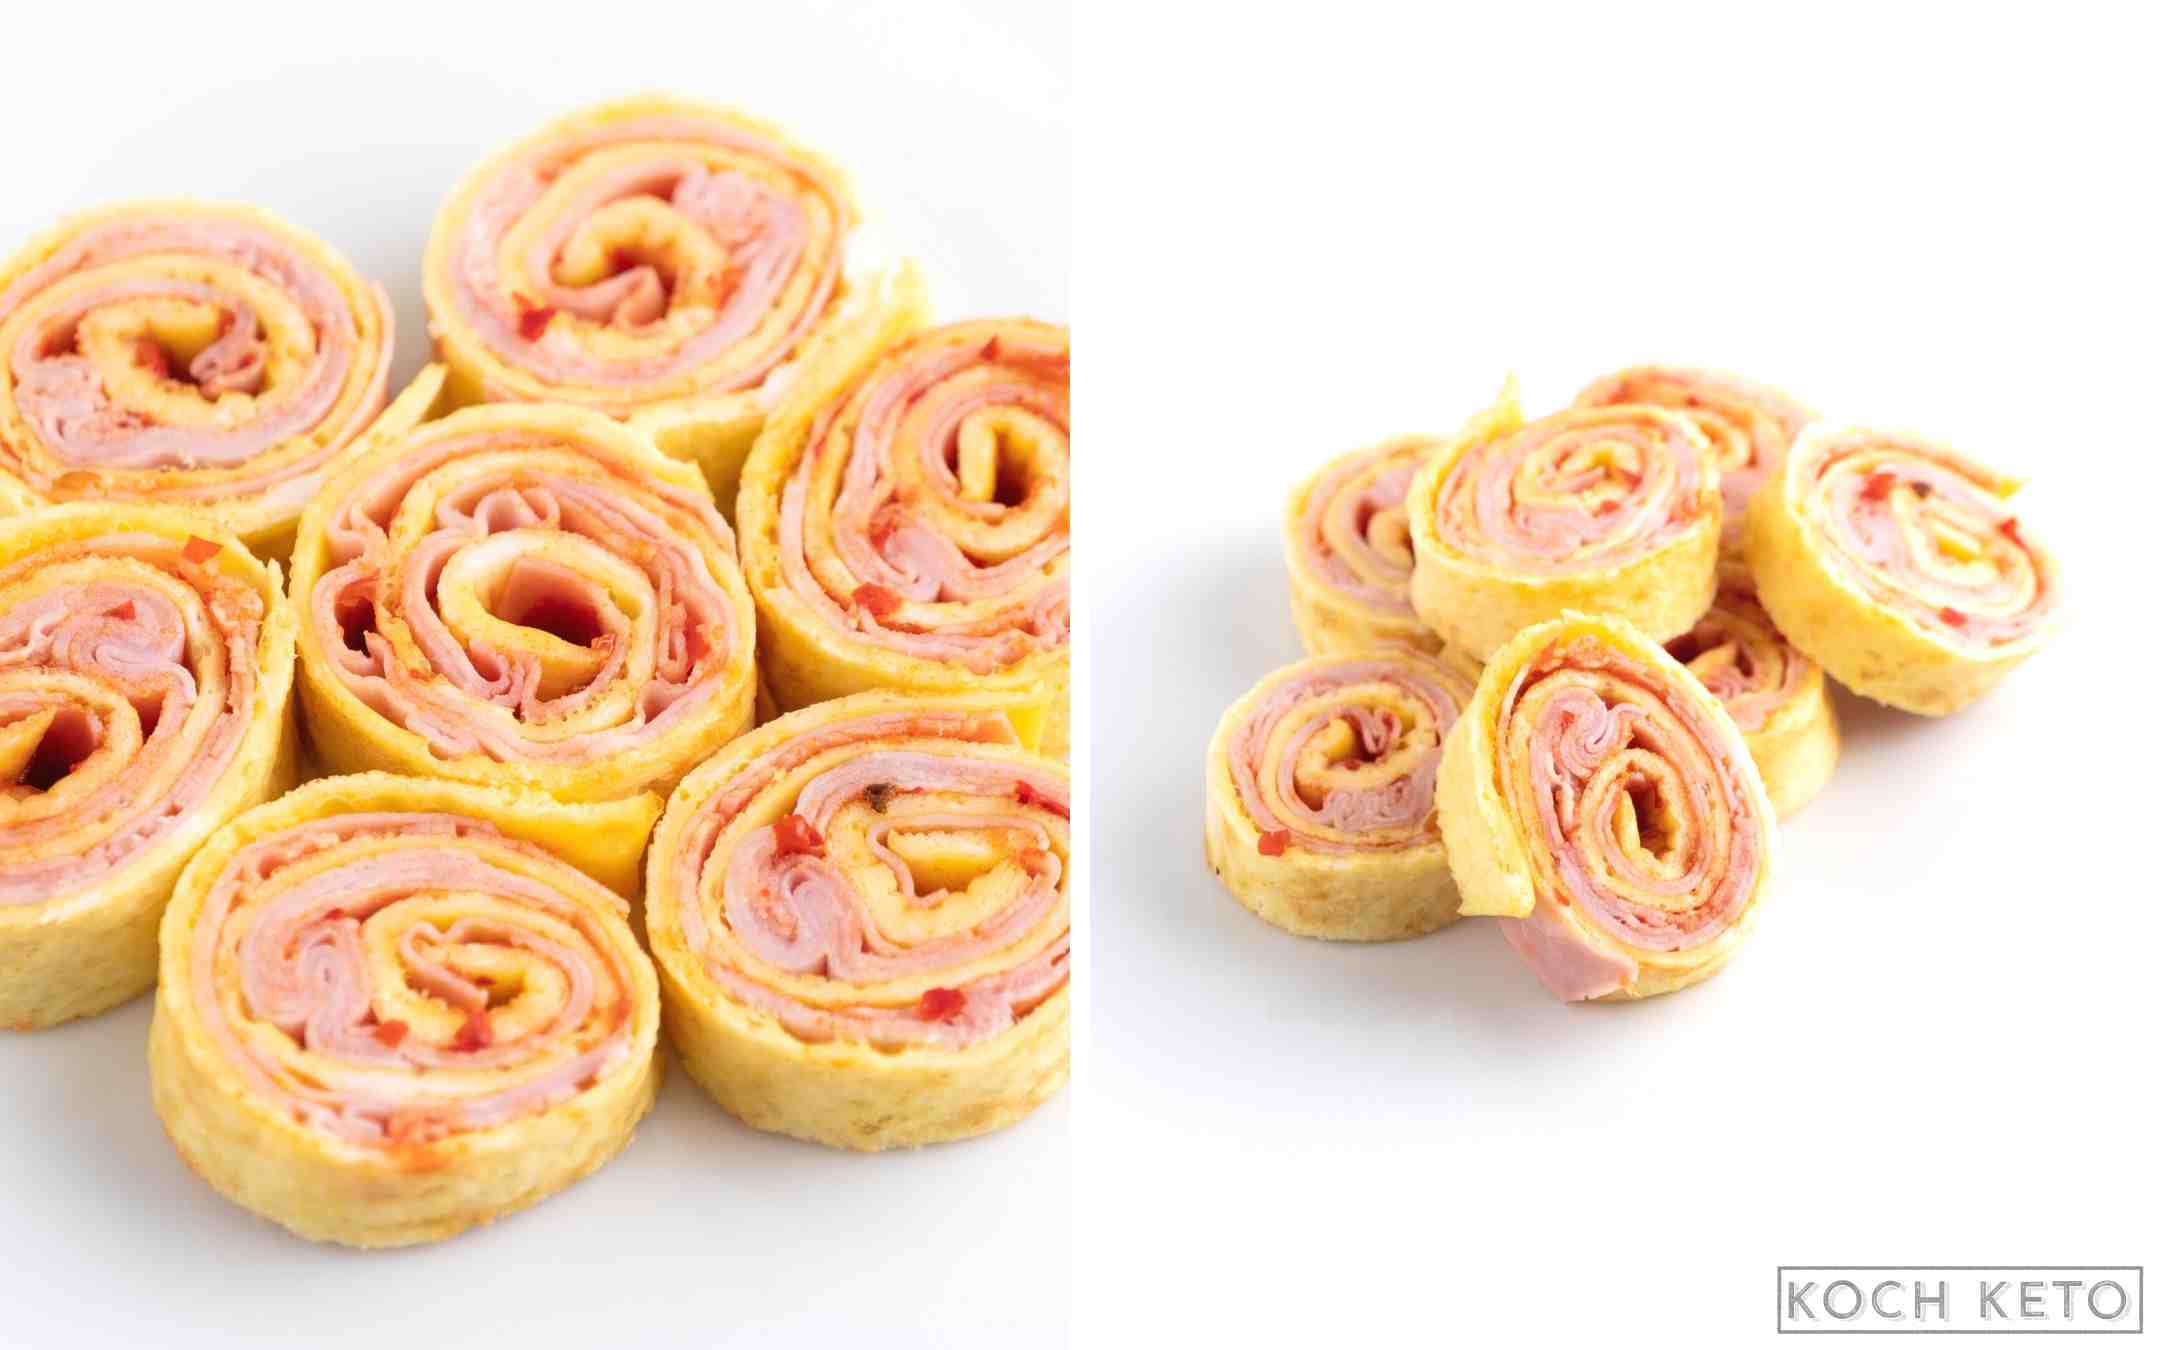 Keto Omelette-Schinken-Röllchen als schneller ketogener Snack ohne Kohlenhydrate Desktop Image Collage